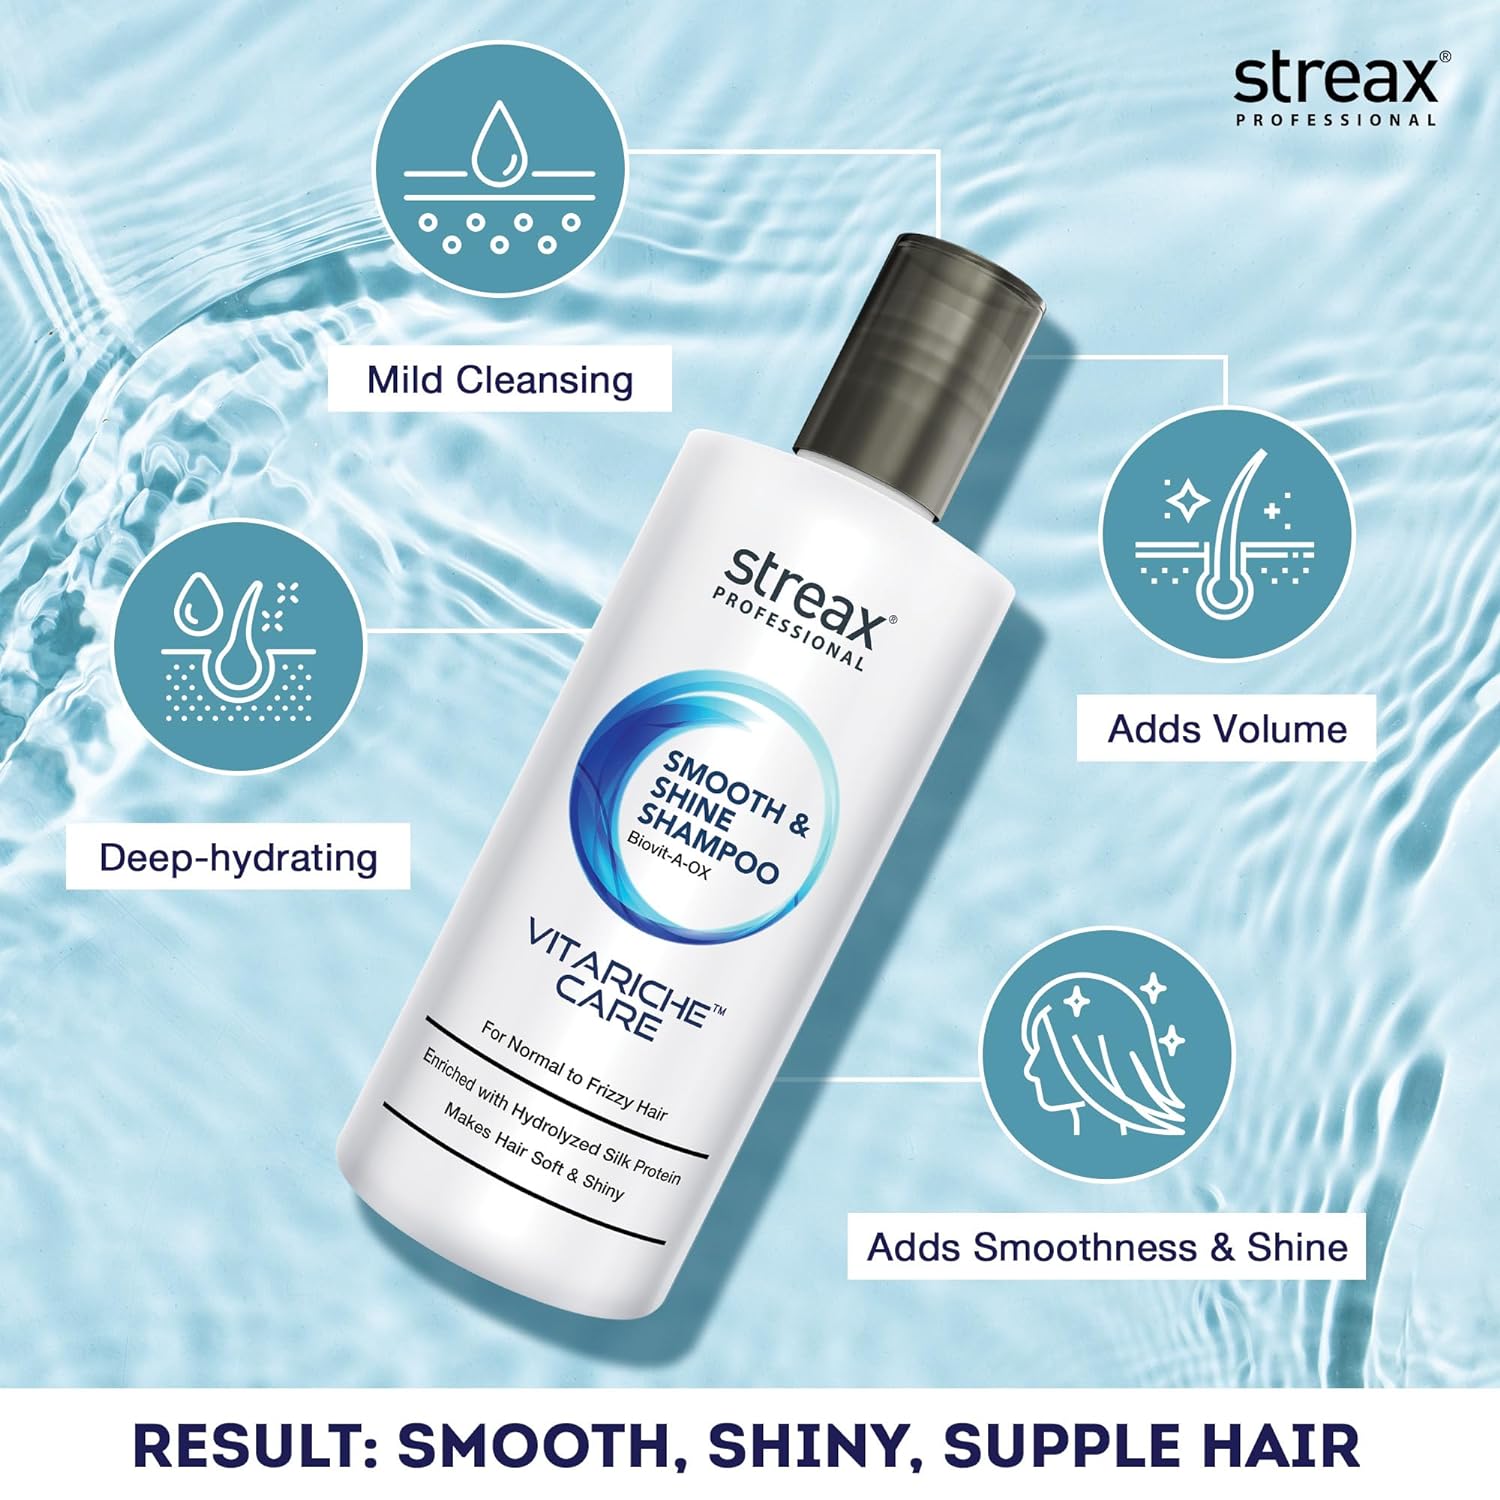 Streax Professional Vitariche Care Smooth & Shine Shampoo 300ml  from Streax Professional